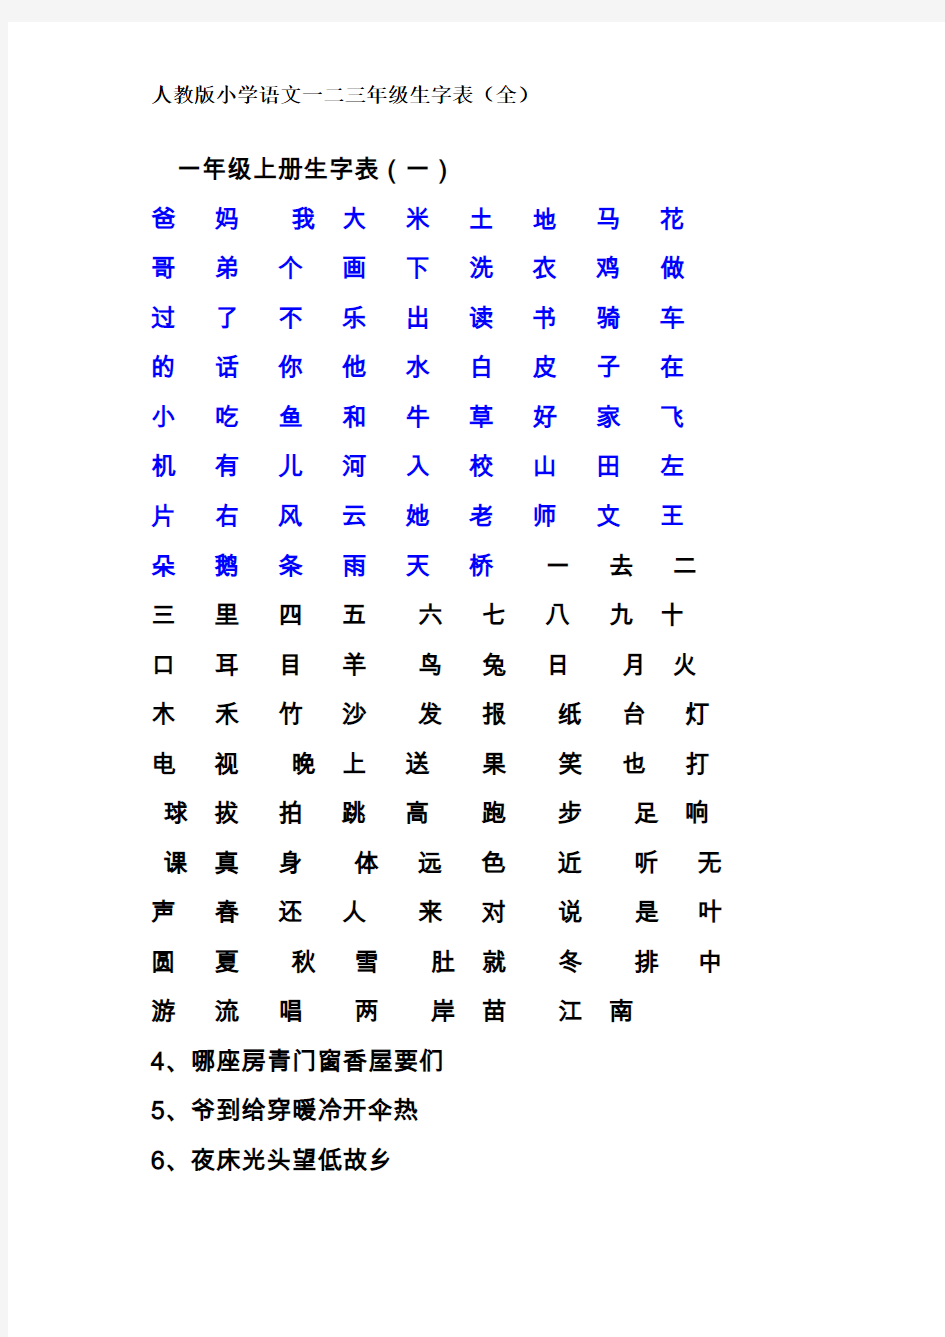 2019年人教版一二三年级生字表(全)